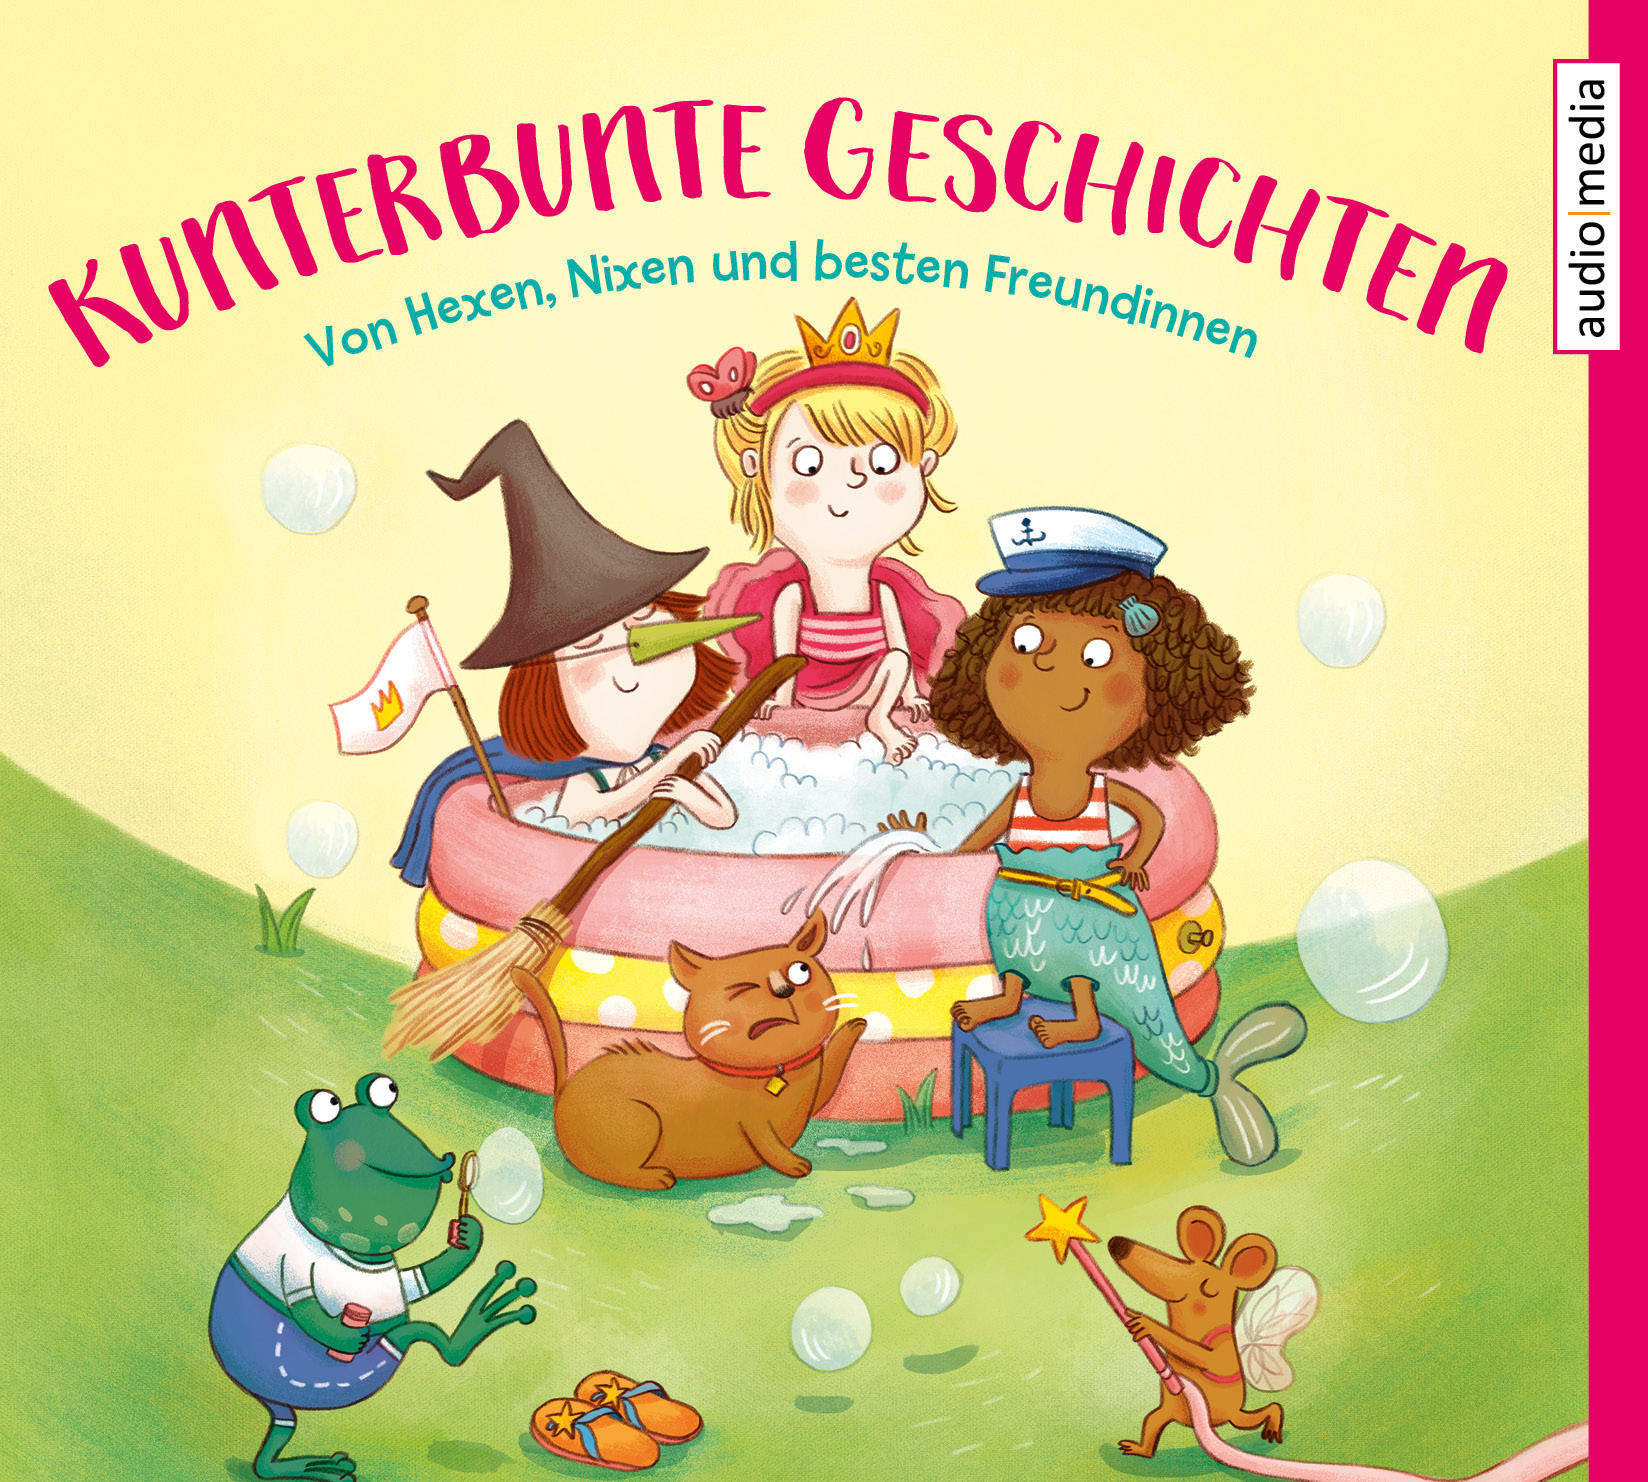 Kunterbunte Geschichten: Von Freundinnen (CD) und besten Nixen Hexen, 